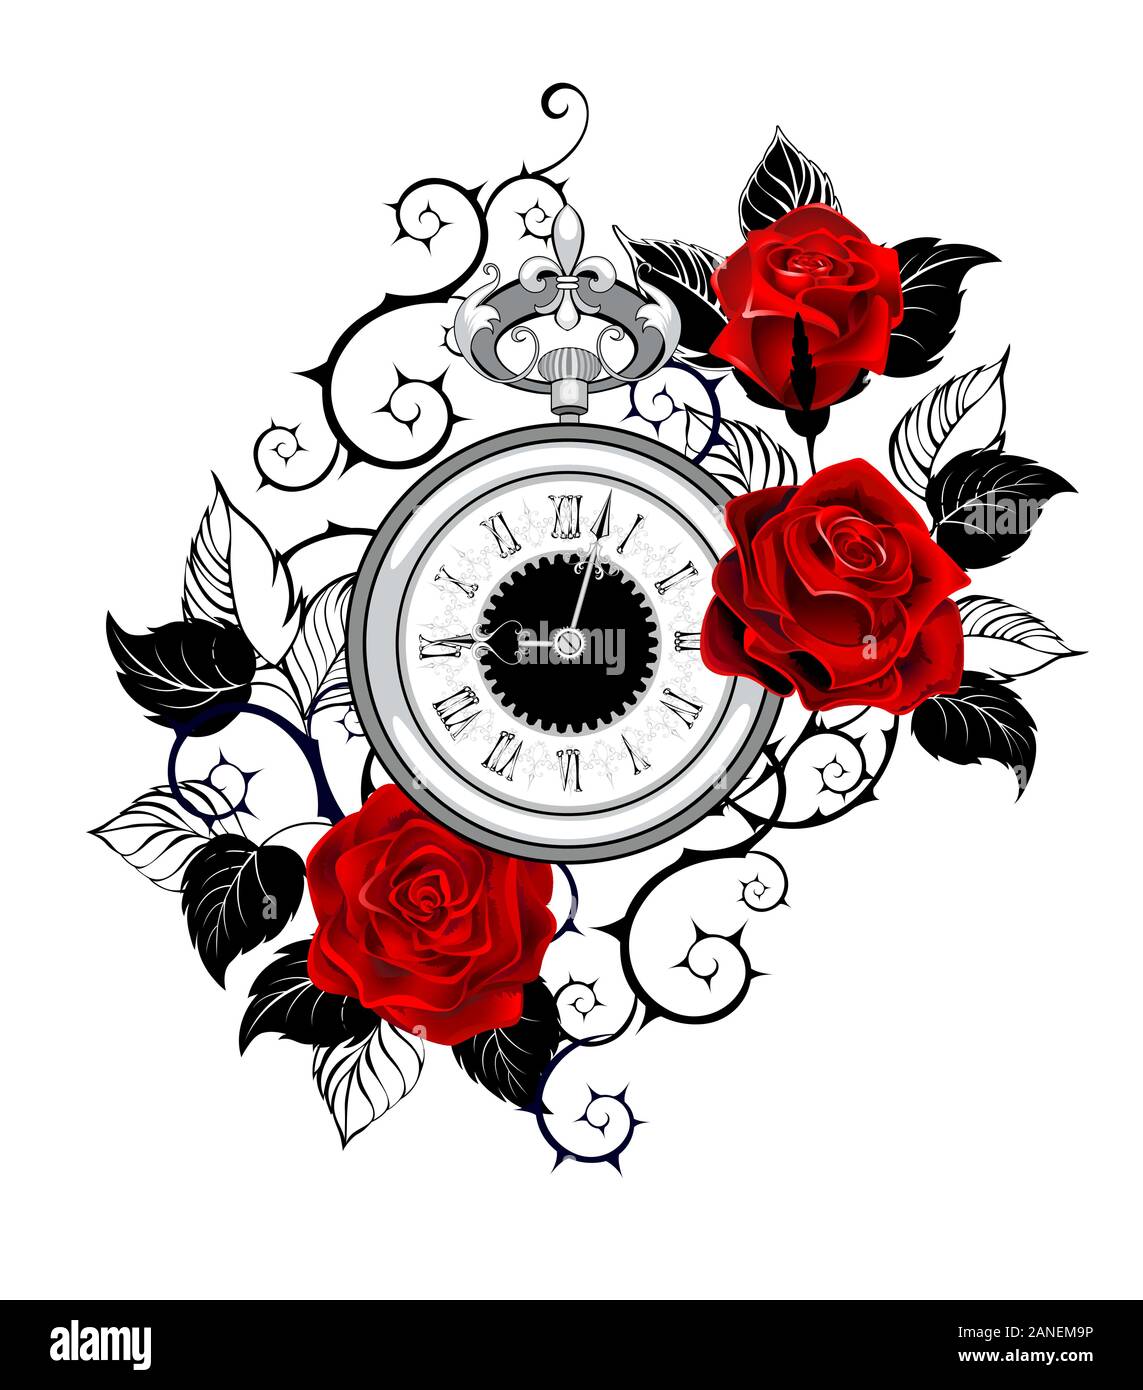 Kontur, monochrom, antike Uhren mit roten Rosen mit schwarzer Kontur Blätter und Stängel eingerichtet. Tattoo Stil. Stock Vektor